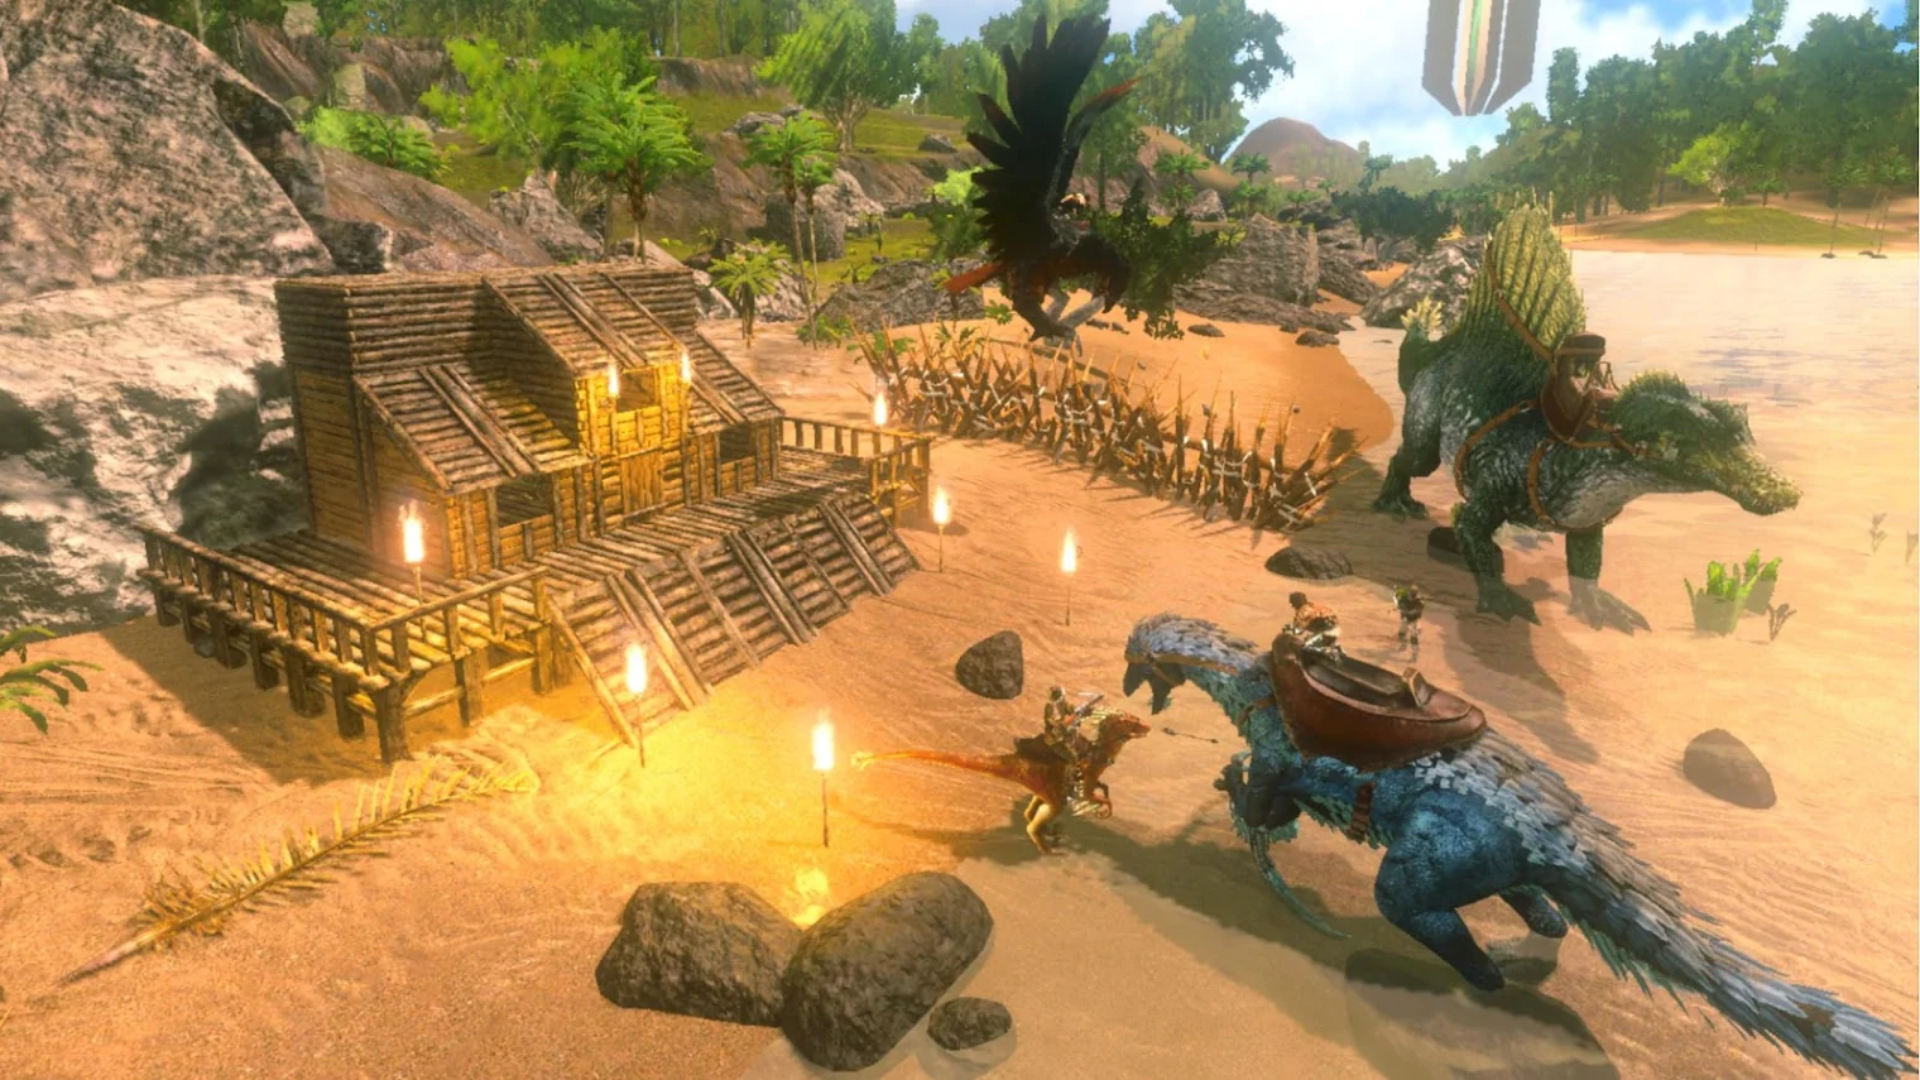 Game Survival Terbaik di Seluler: Ark: Survival Evolved. Gambar menunjukkan dinosaurus di dekat rumah yang sedang dibangun